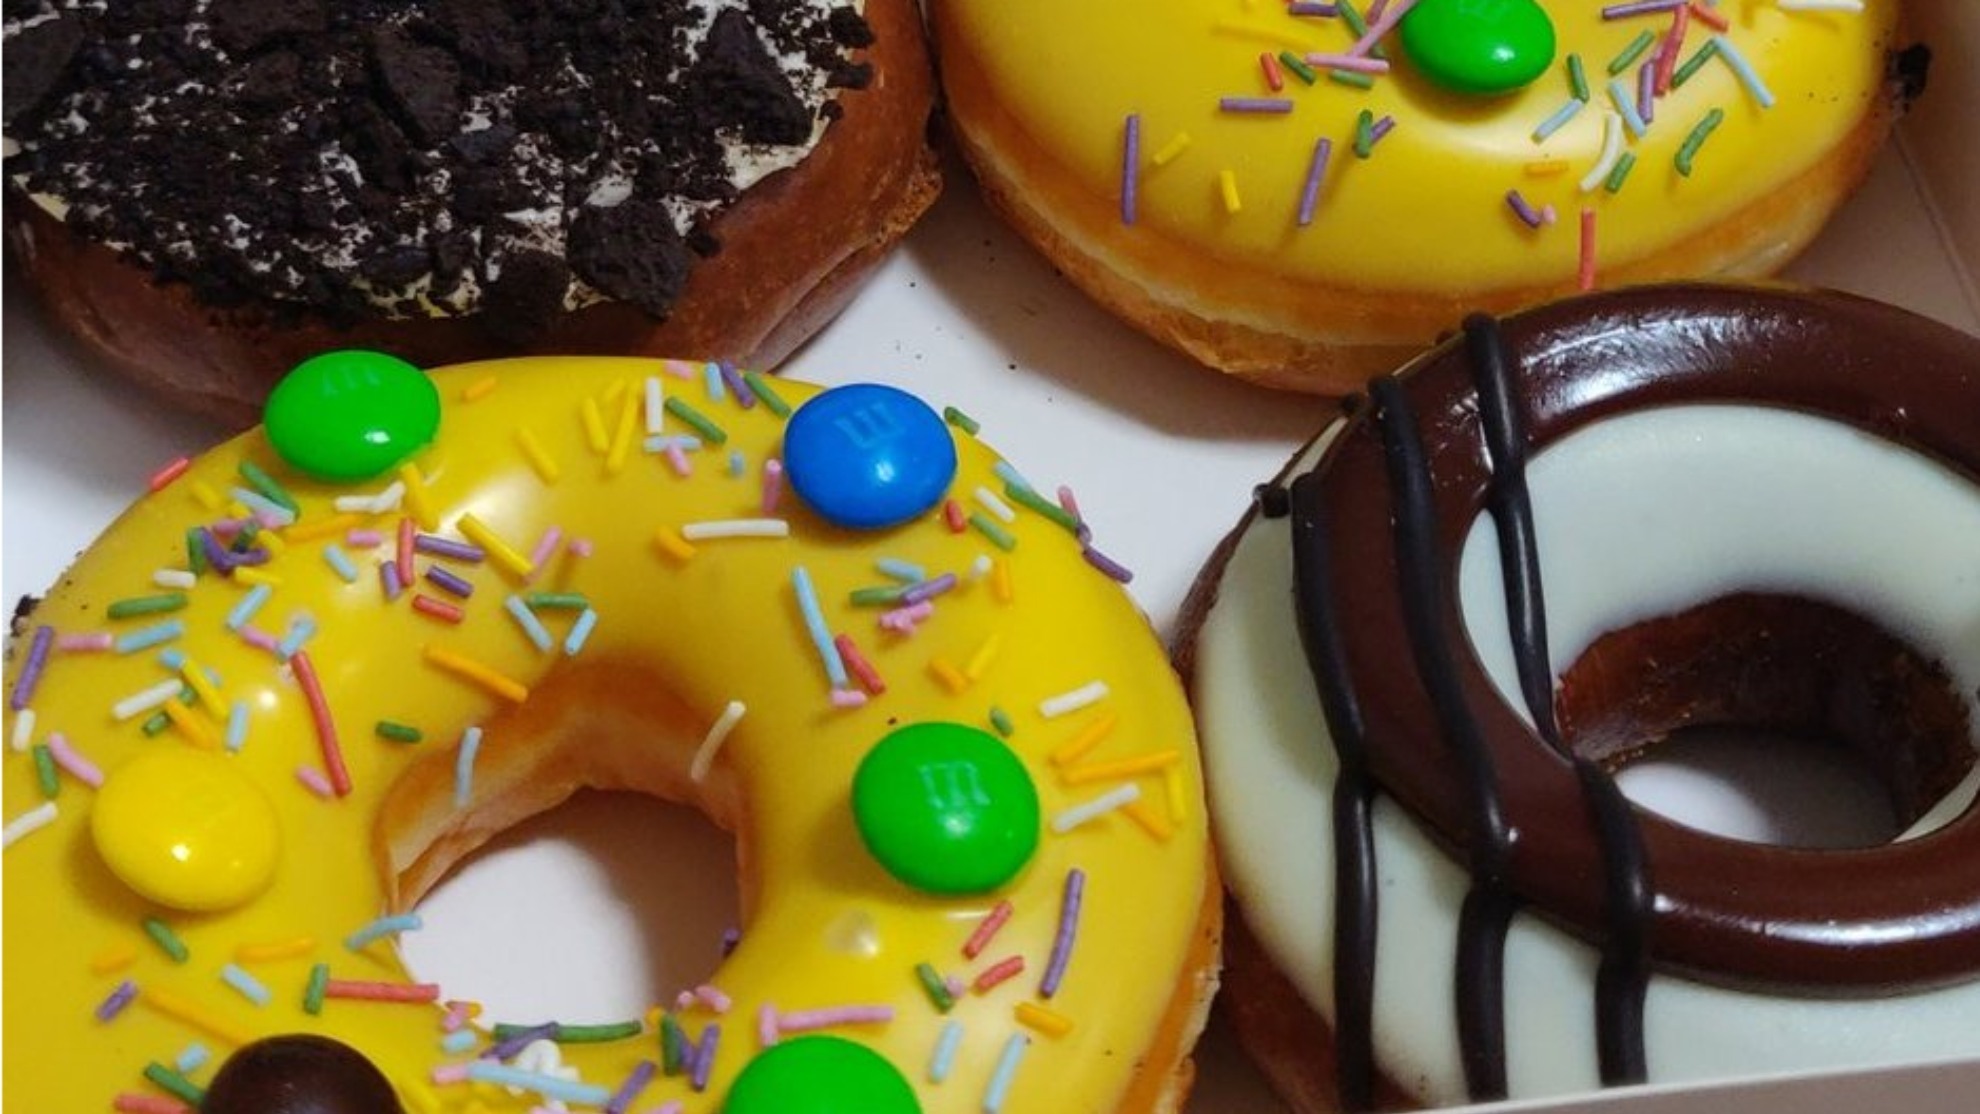 Krispy Kreme donuts.